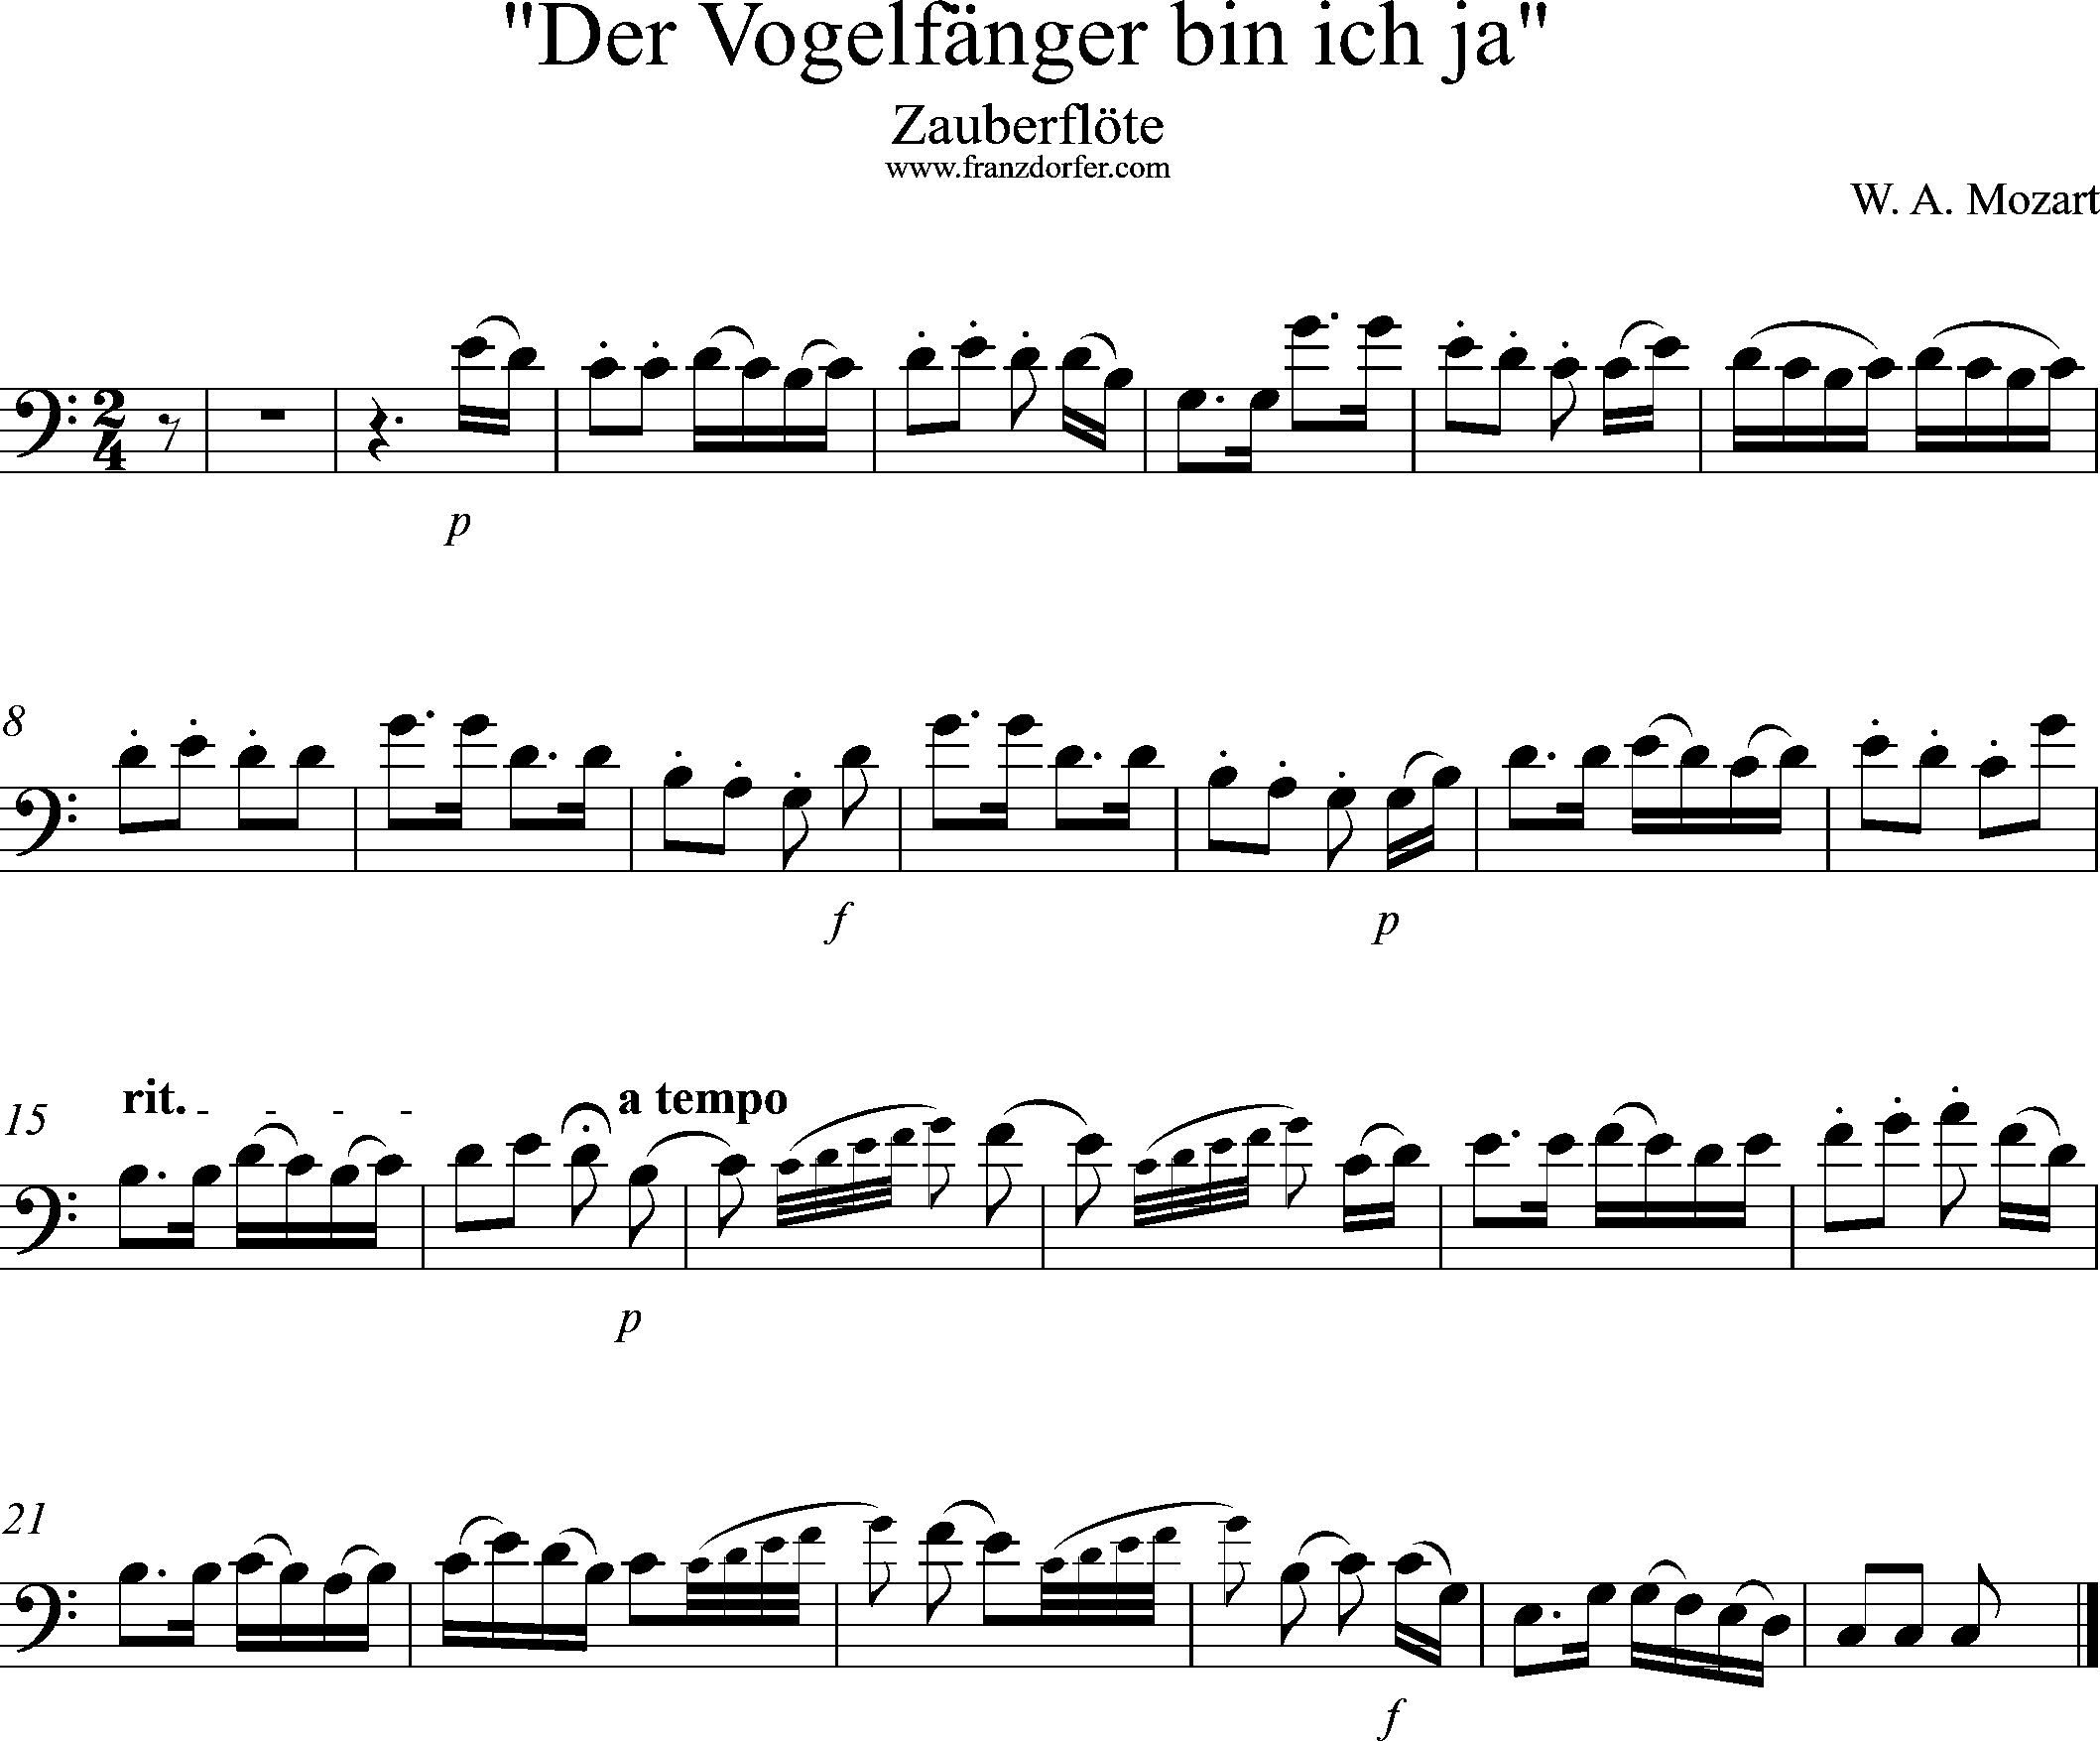 Zauberflöte, Vogelfängerlied, Solostimme, Bassschlüssel, C-Dur